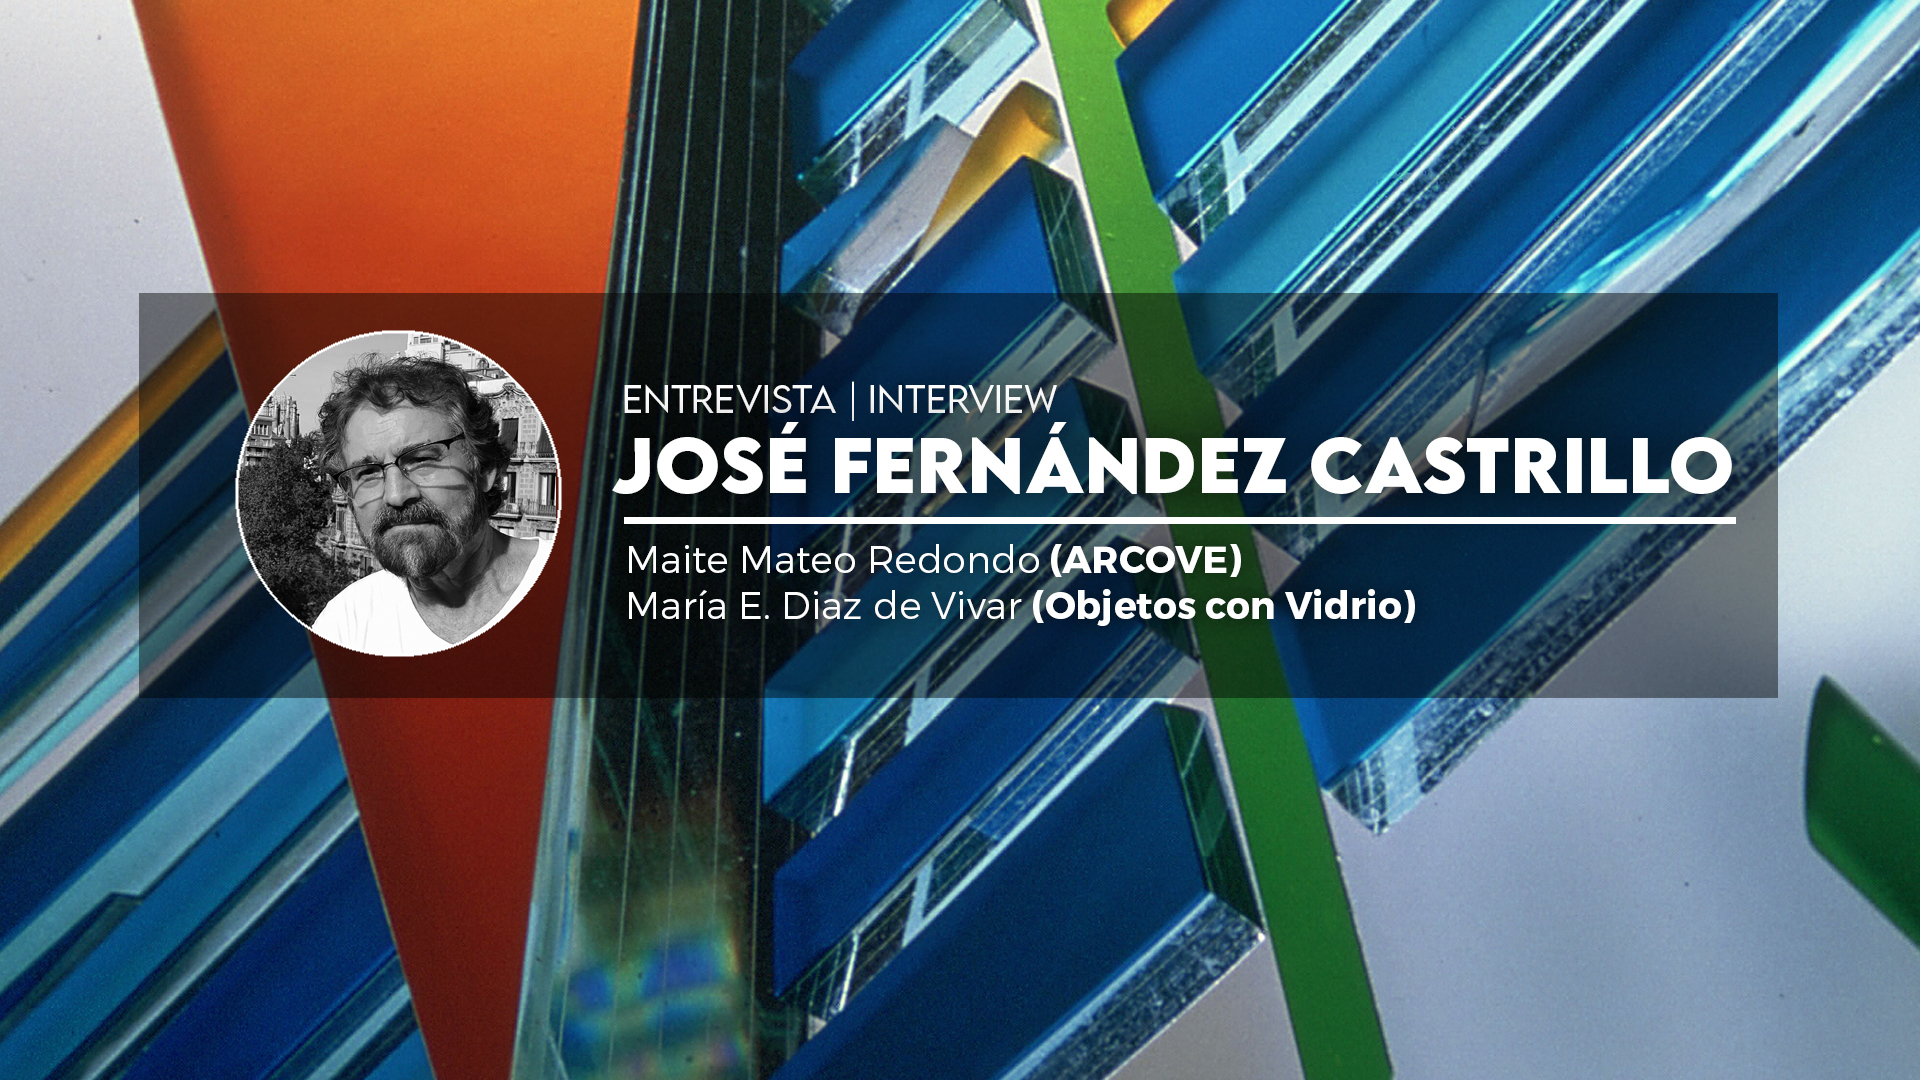 Entrevista a José Fernandez Castrillo 2022 Año Internacional del Vidrio ARCOVE - Objetos con Vidrio